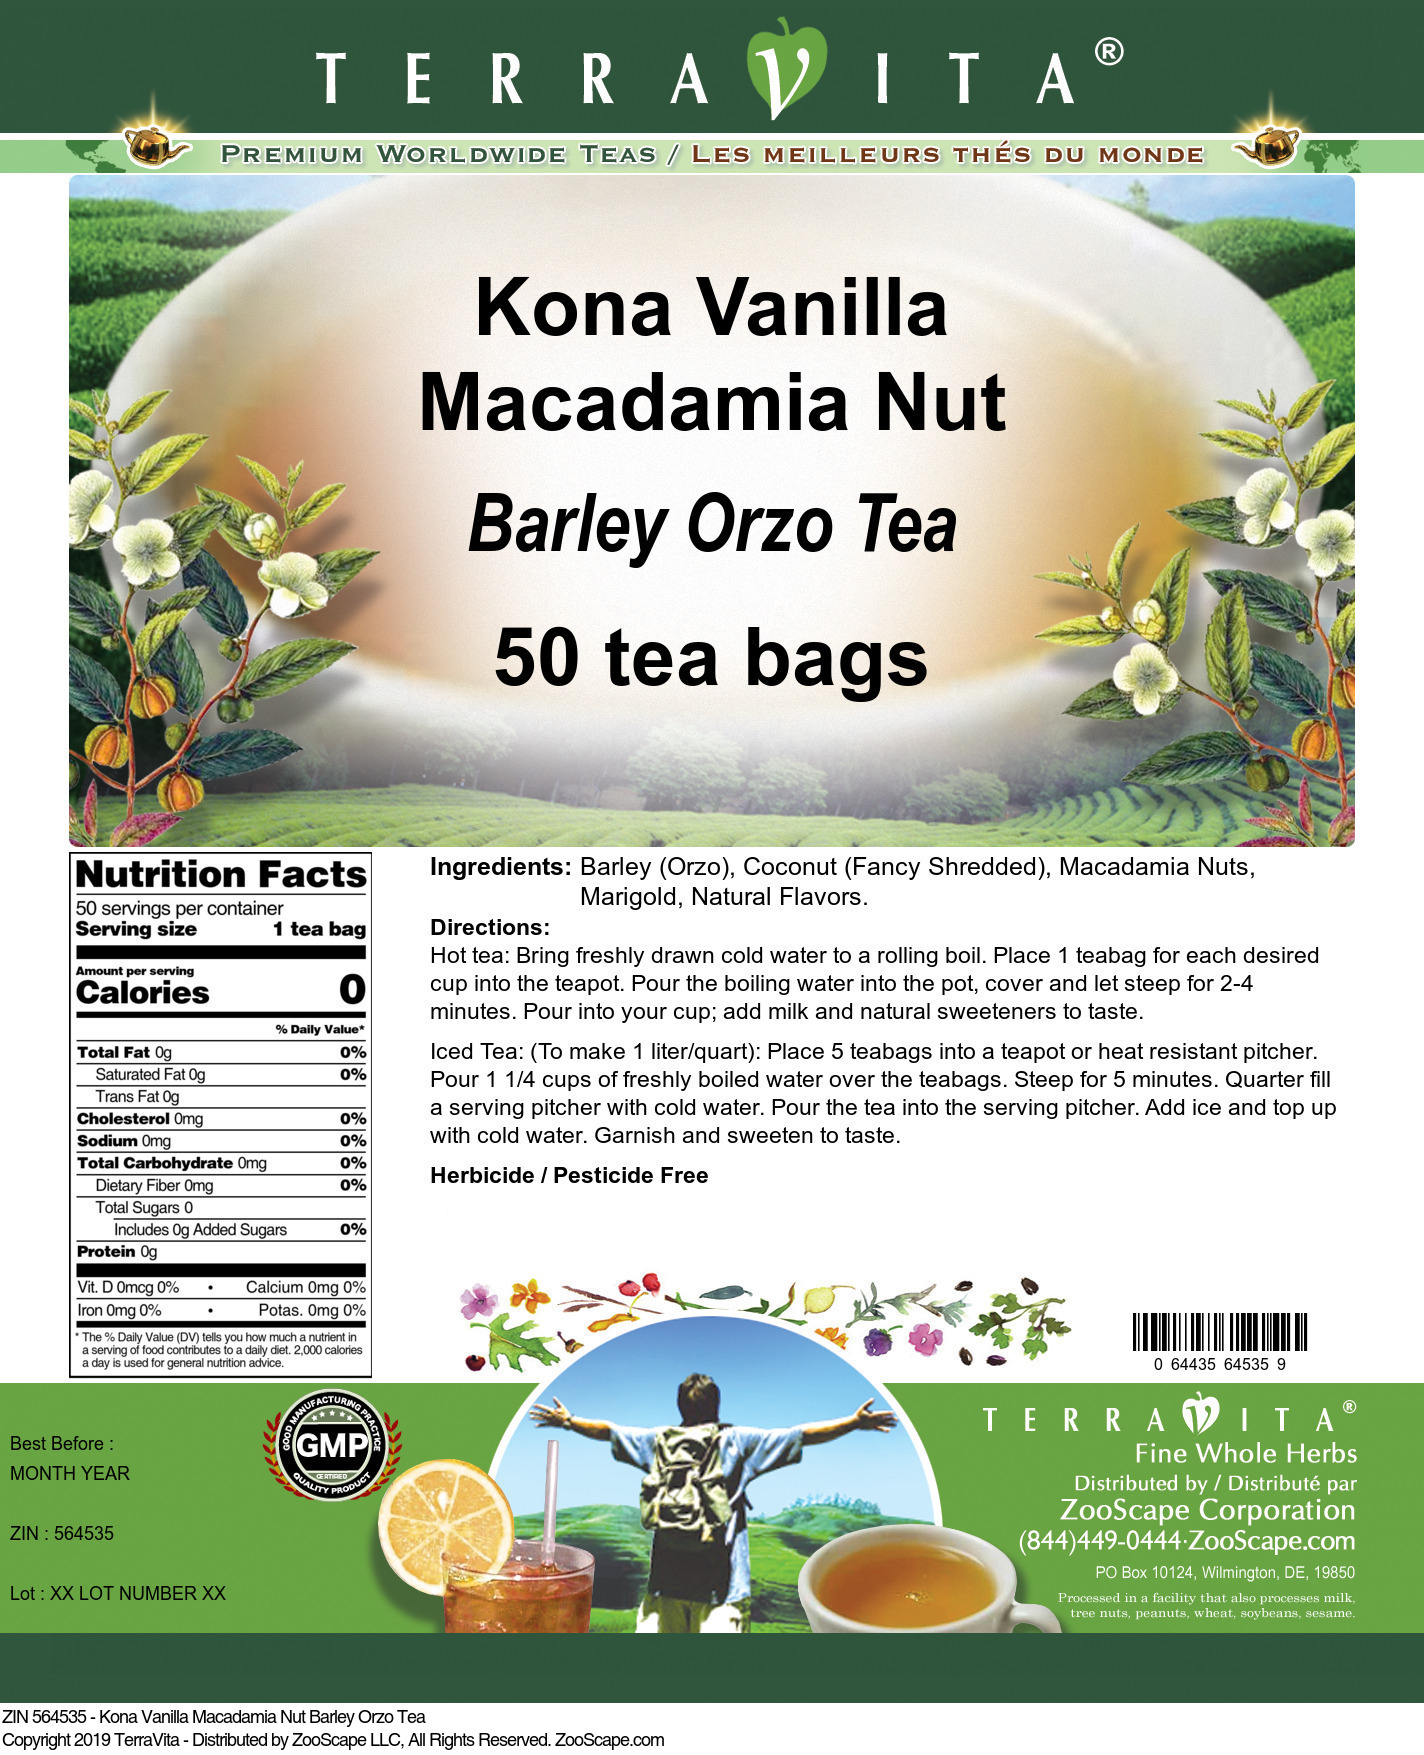 Kona Vanilla Macadamia Nut Barley Orzo Tea - Label